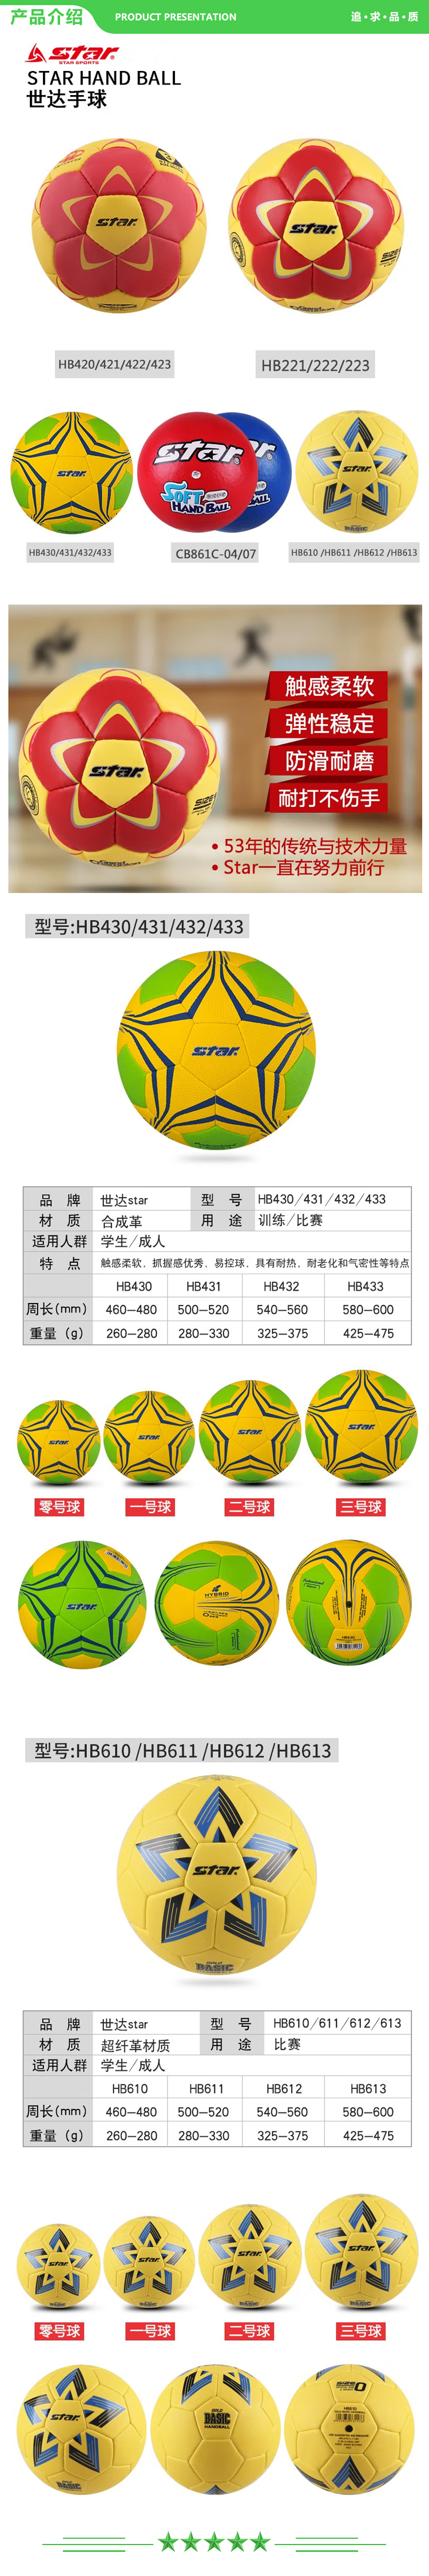 世达 star HB612 二号球 手球比赛用球防滑pu材质舒适控球比赛训练用球 .jpg